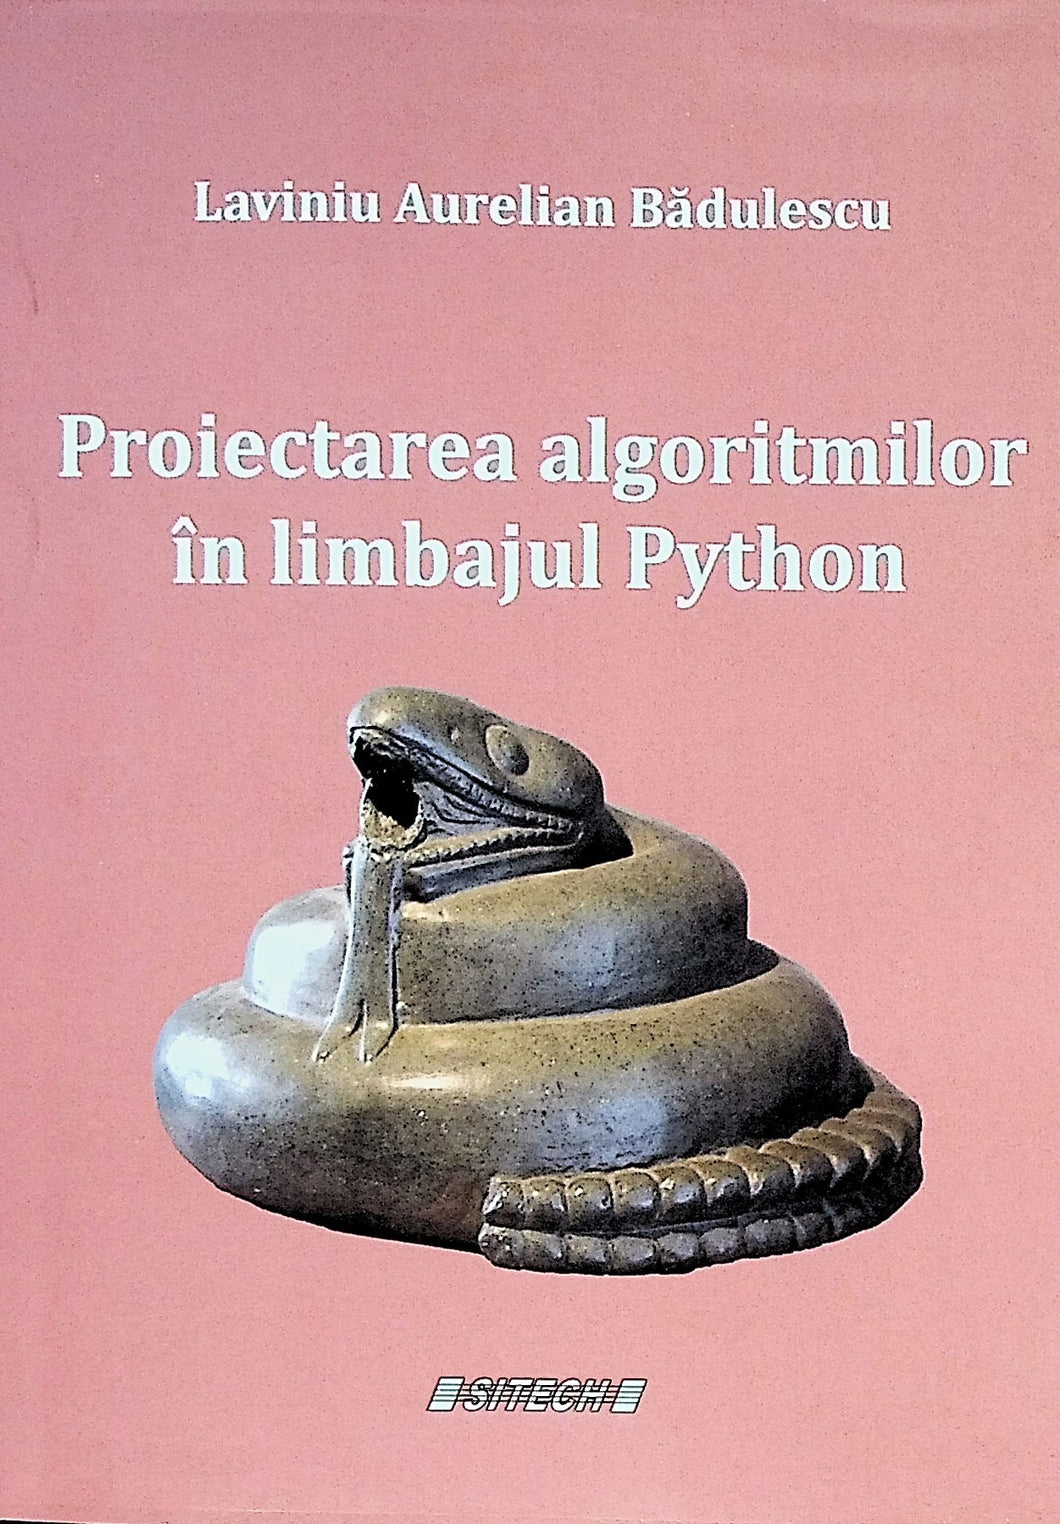 Proiectarea algoritmilor in limbajul Python - Laviniu Aurelian Badulescu